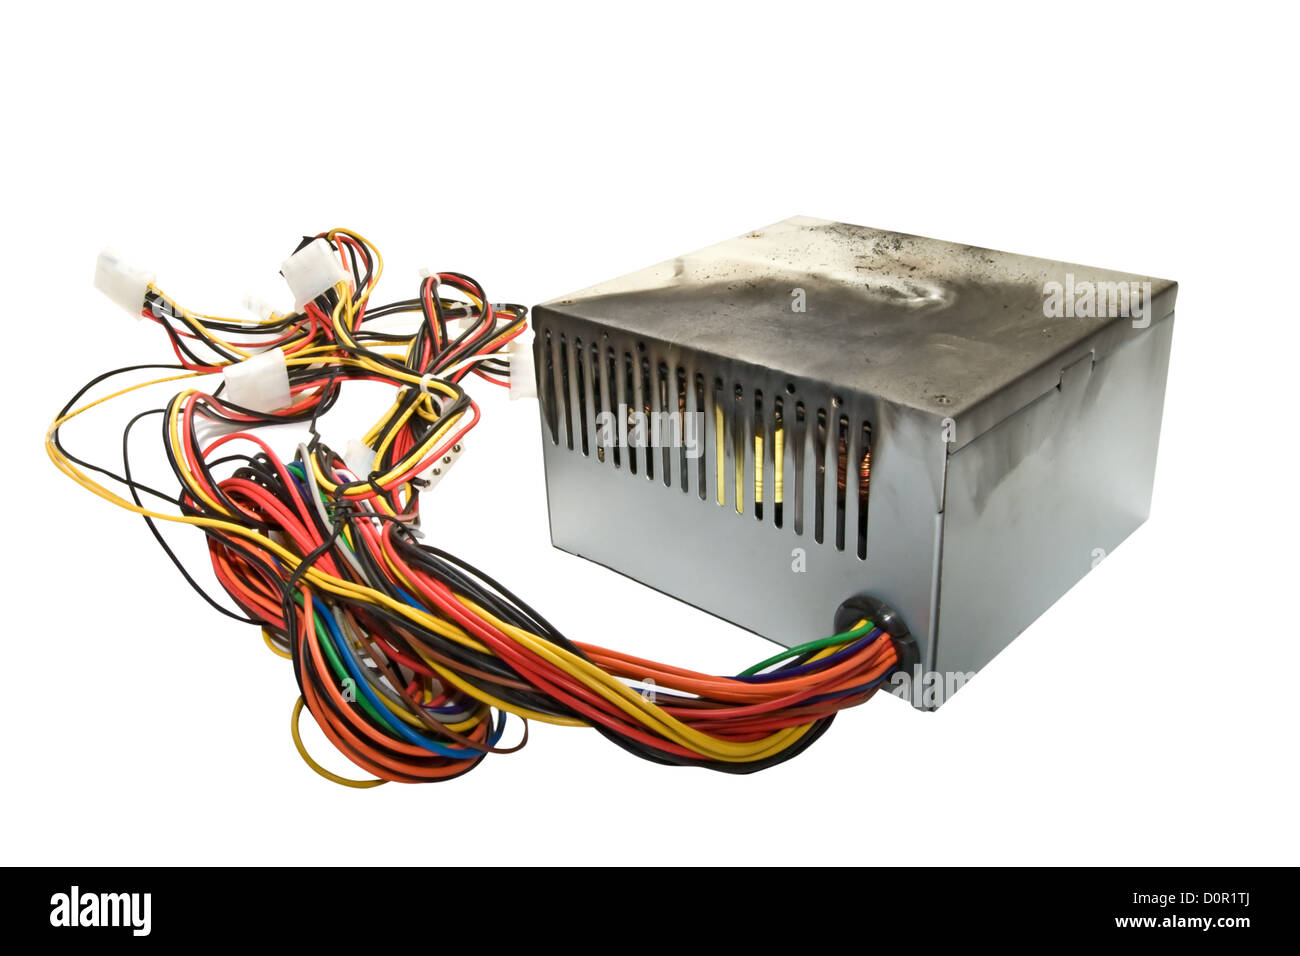 Netzteil vom PC, verbrannt durch Sprung Spannung Stockfotografie - Alamy